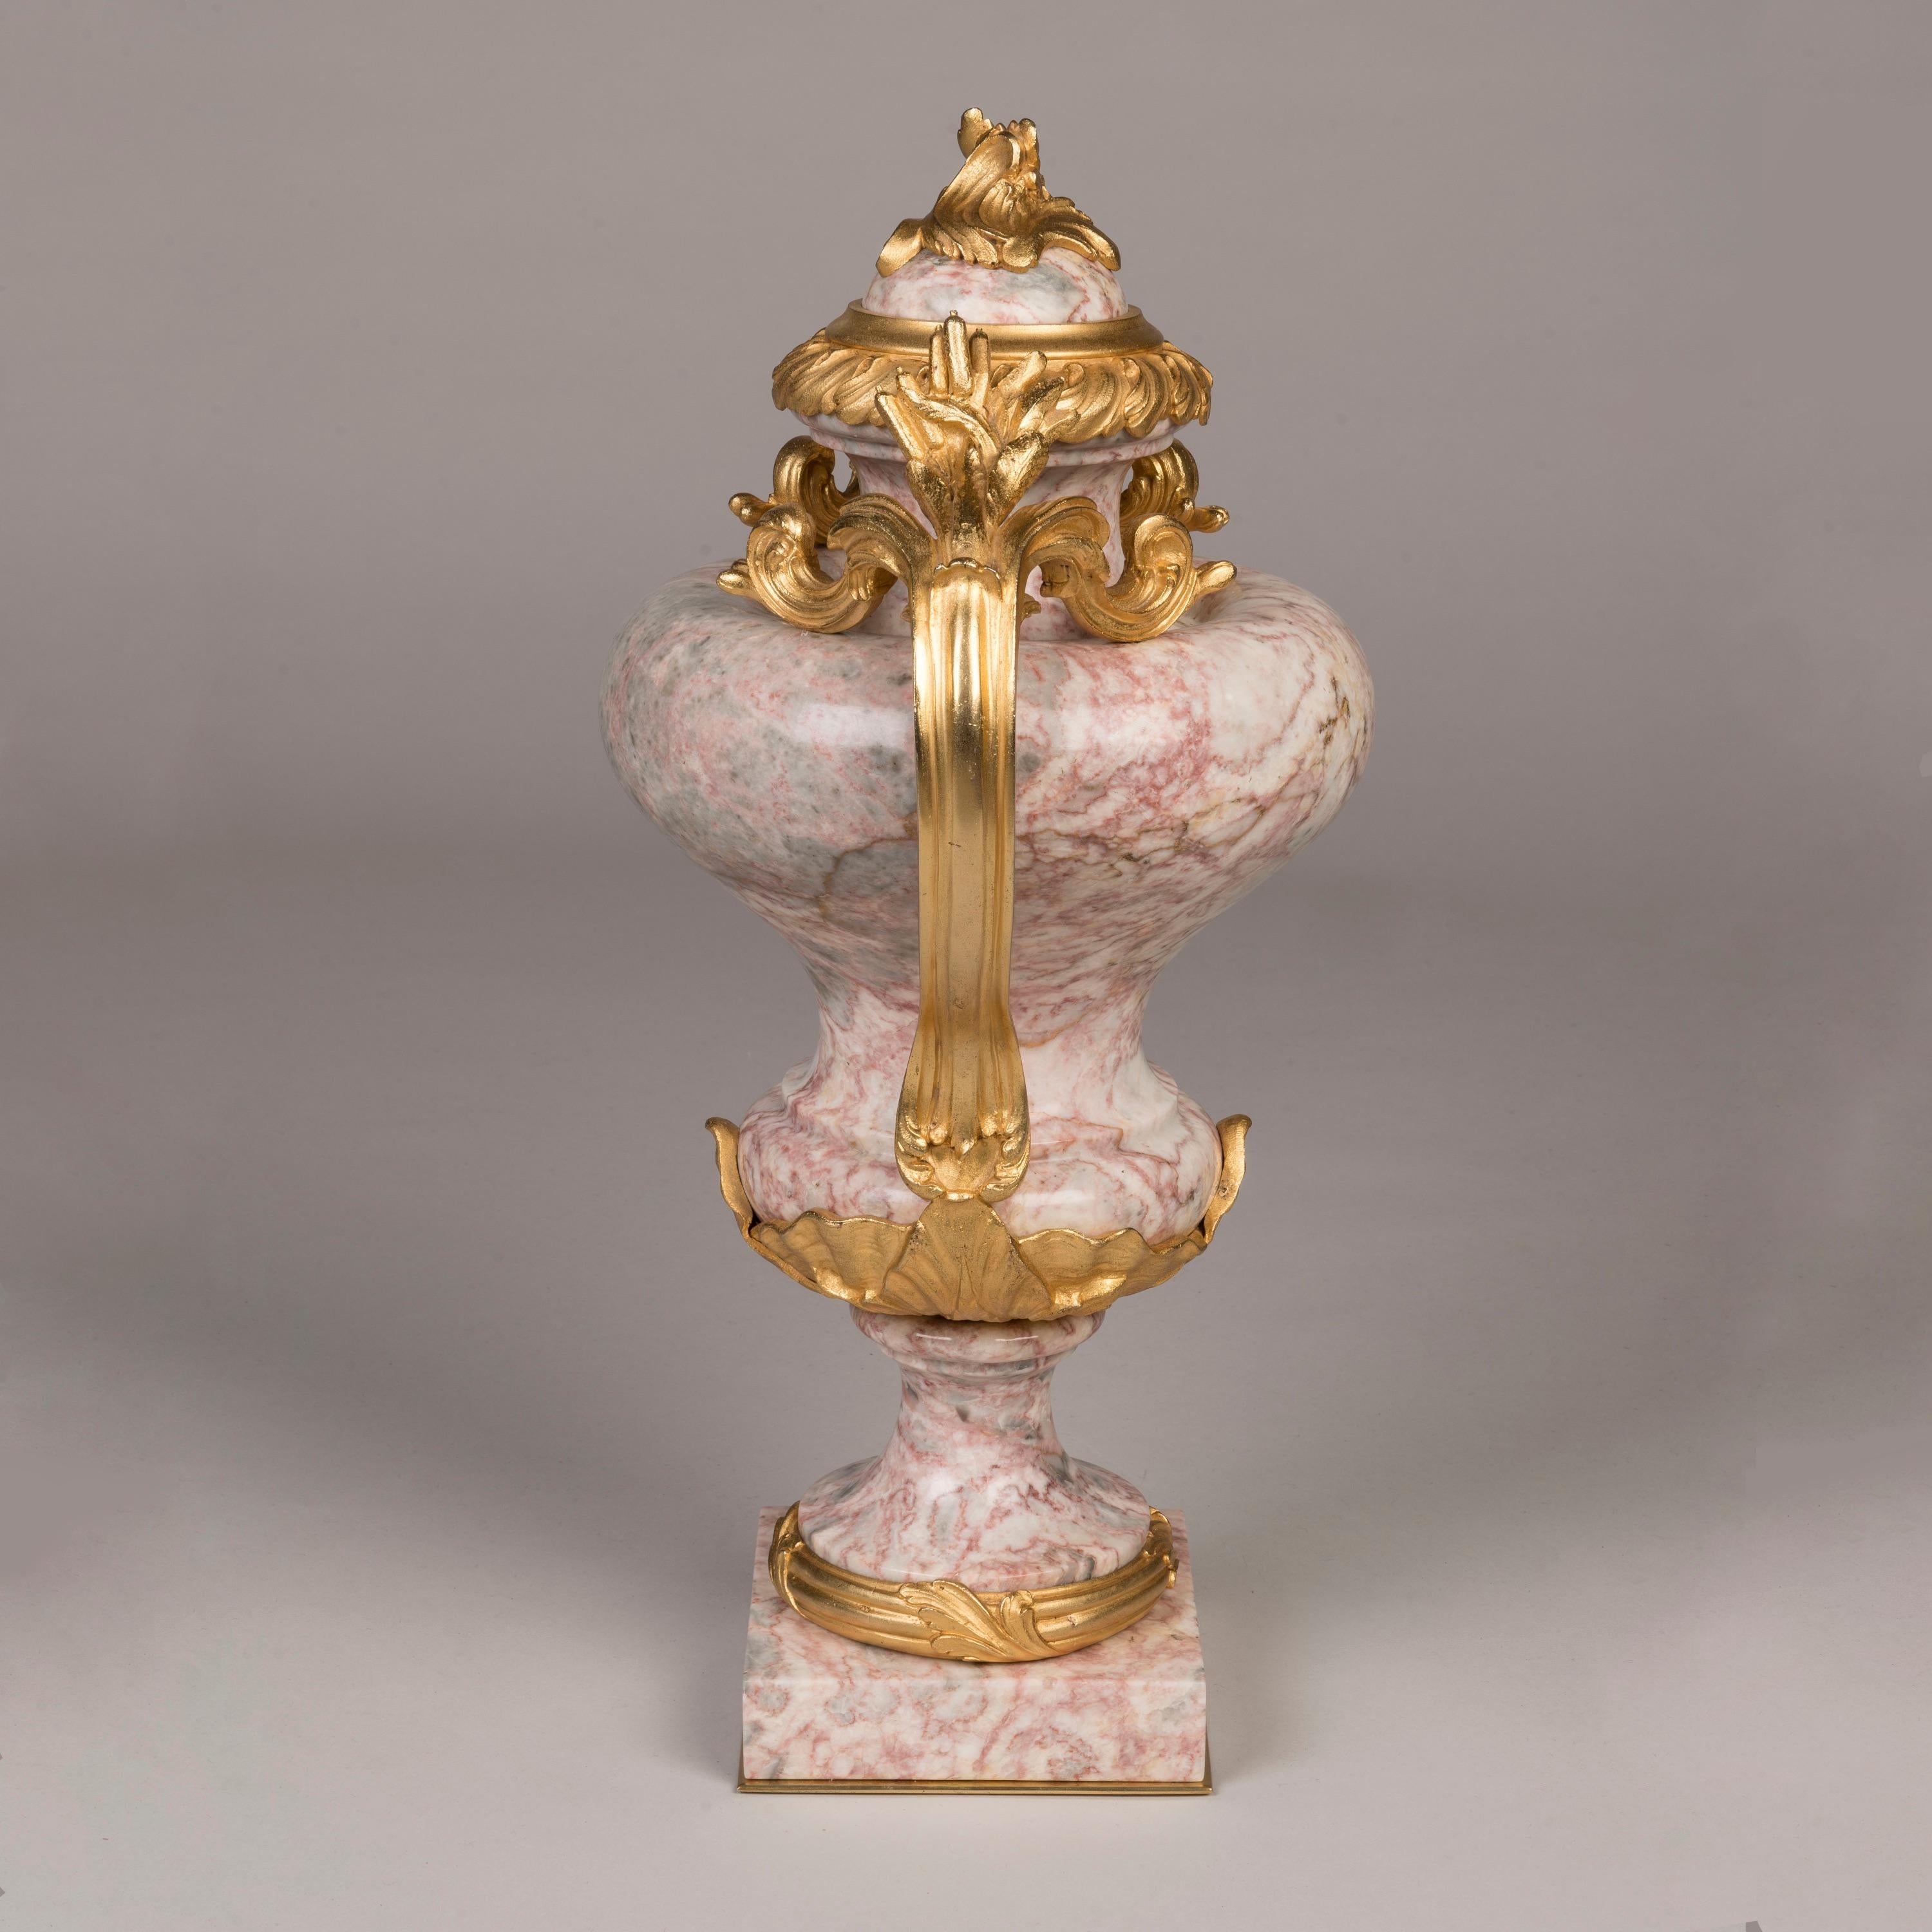 Ein Paar Fleur de Pêcher-Marmorvasen
Im Stil von Ludwig XV.

Aus italienischem Fleur de Pêcher-Marmor gefertigt und in Ormolu gefasst, stehen die beiden eiförmigen Balustervasen auf quadratischen Sockeln mit vergoldeten Kragen, die jeweils mit